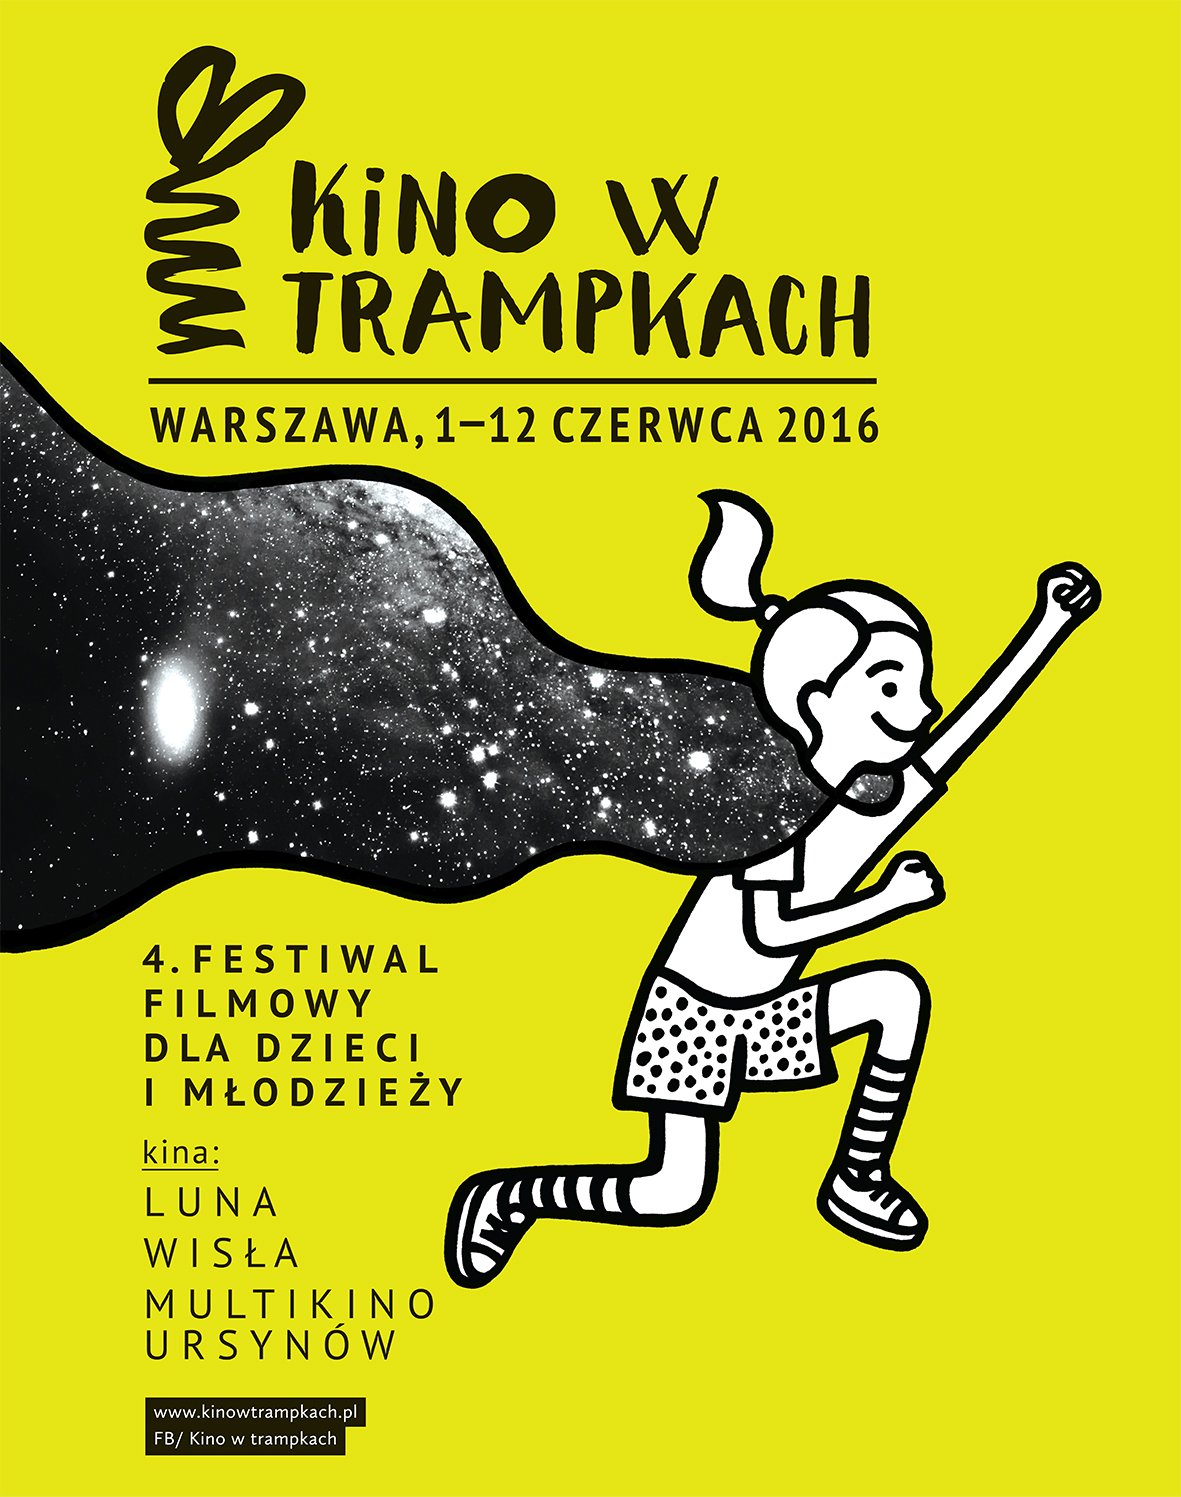 Kino w trampkach letni festiwal filmowy dla dzieci w Warszawie